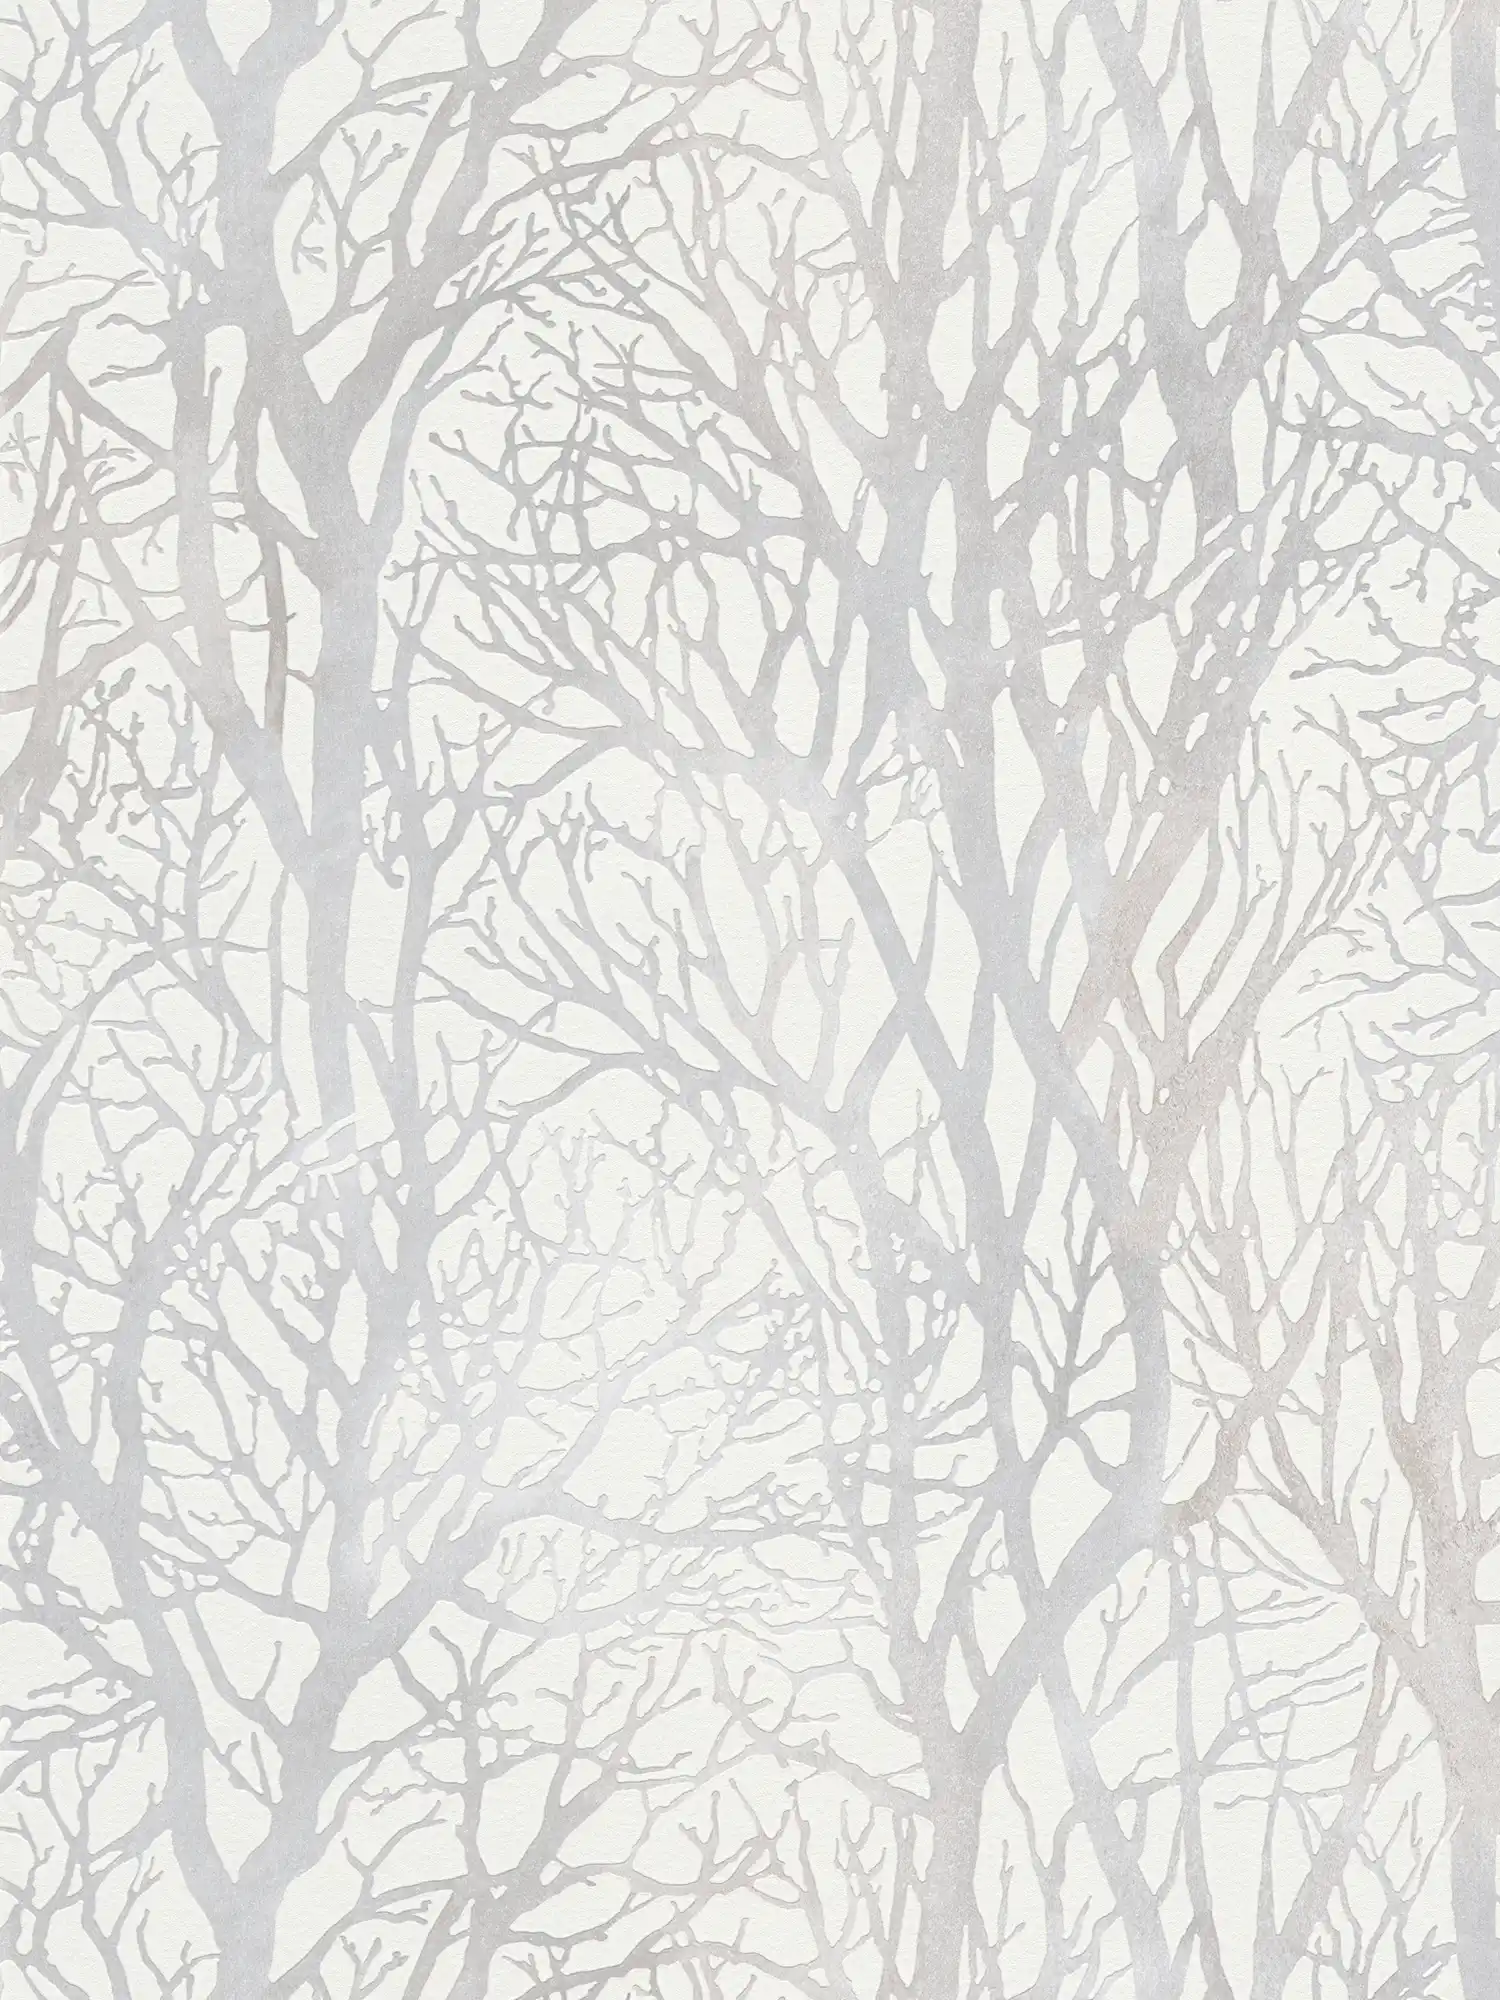 Papier peint gris argenté avec motif de branches et effet métallique - blanc, argenté
